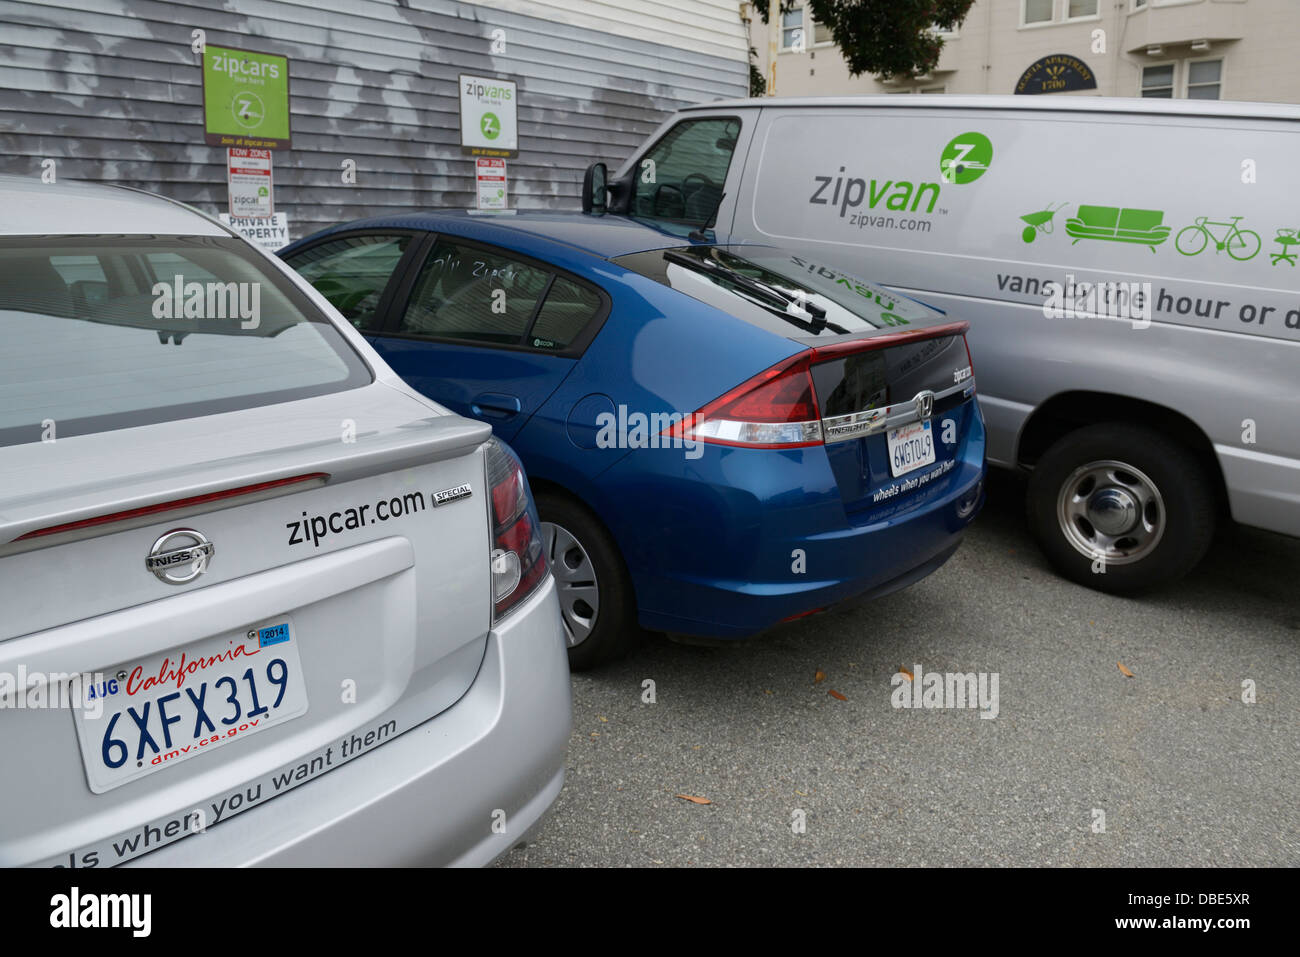 Zipcar et Zipvan véhicules auto-partage, S.F., CA Banque D'Images